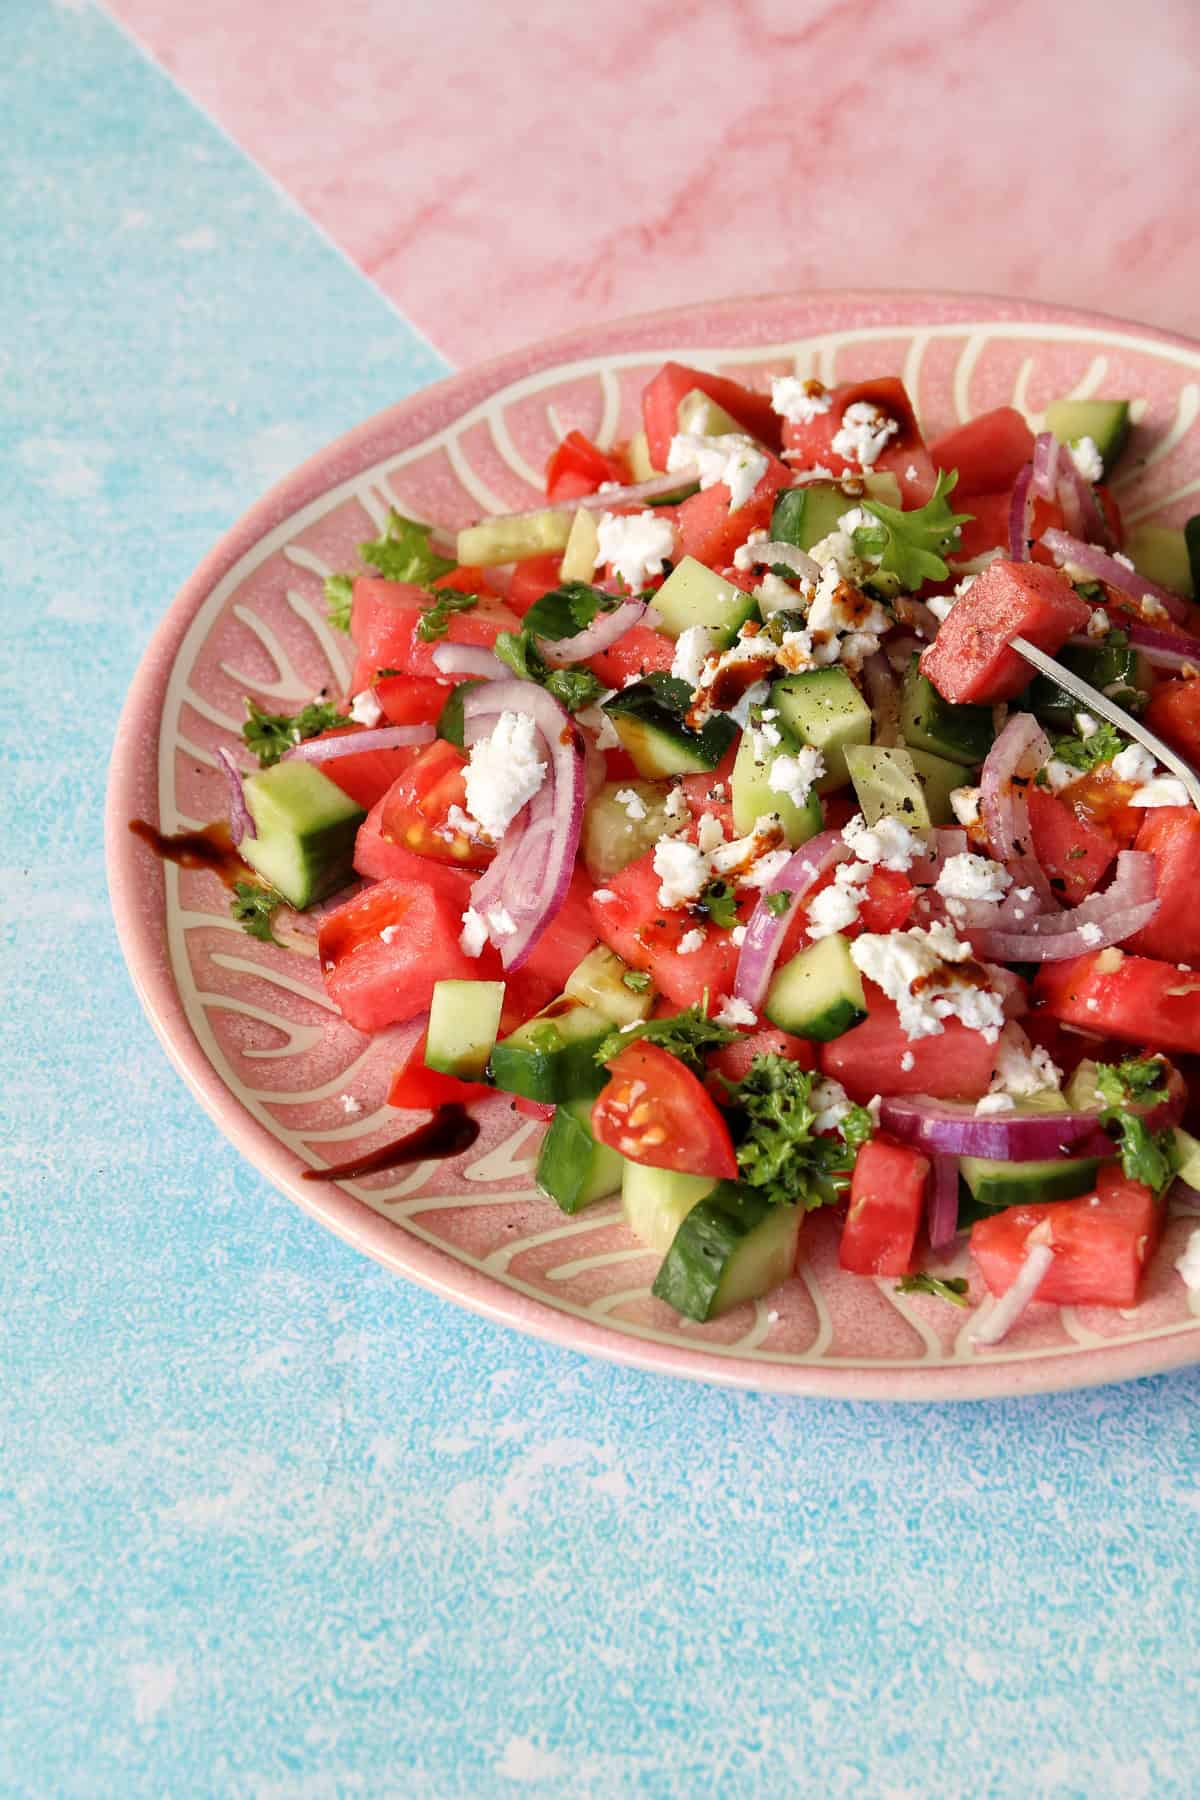 Detailaufnahme der Zutaten vom Salat, deutlich zu erkennen: rote Zwiebeln, Gurken, Tomaten, Wassermelone und Feta. Mit Balsamico beträufelt.